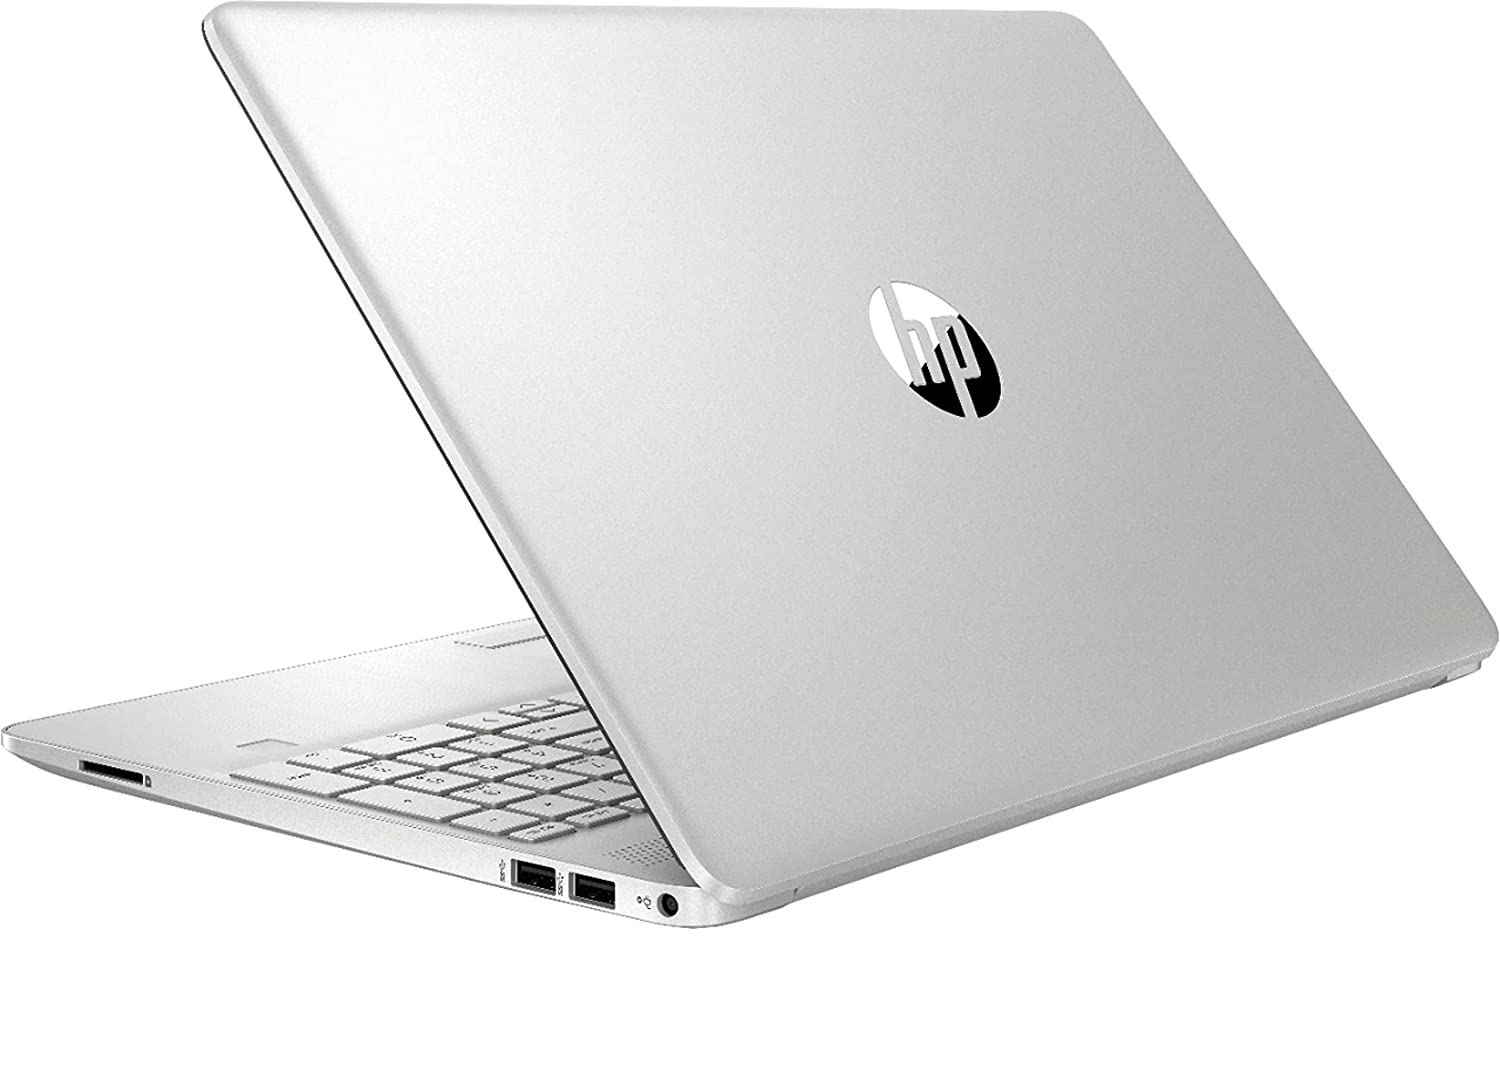 HP 15-dw Laptop Intel Core i3-1115G4 8GB 256GB SSD 15.6 Full HD WLED Win 10